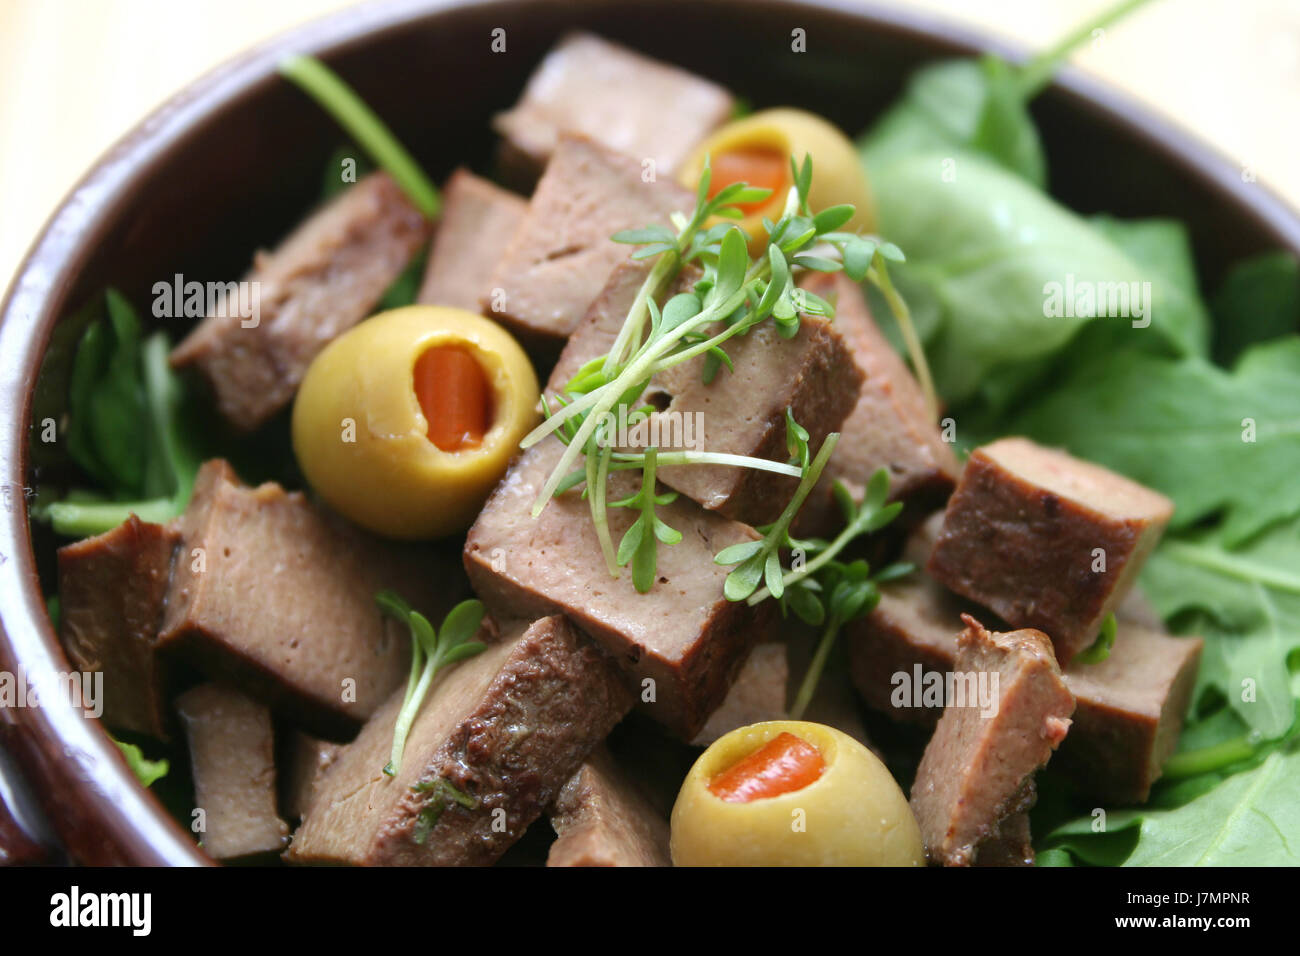 Specie bovina verso l'interno delle olive fegato carni fresche aliment alimentare bovini vegetale piatto unico Foto Stock